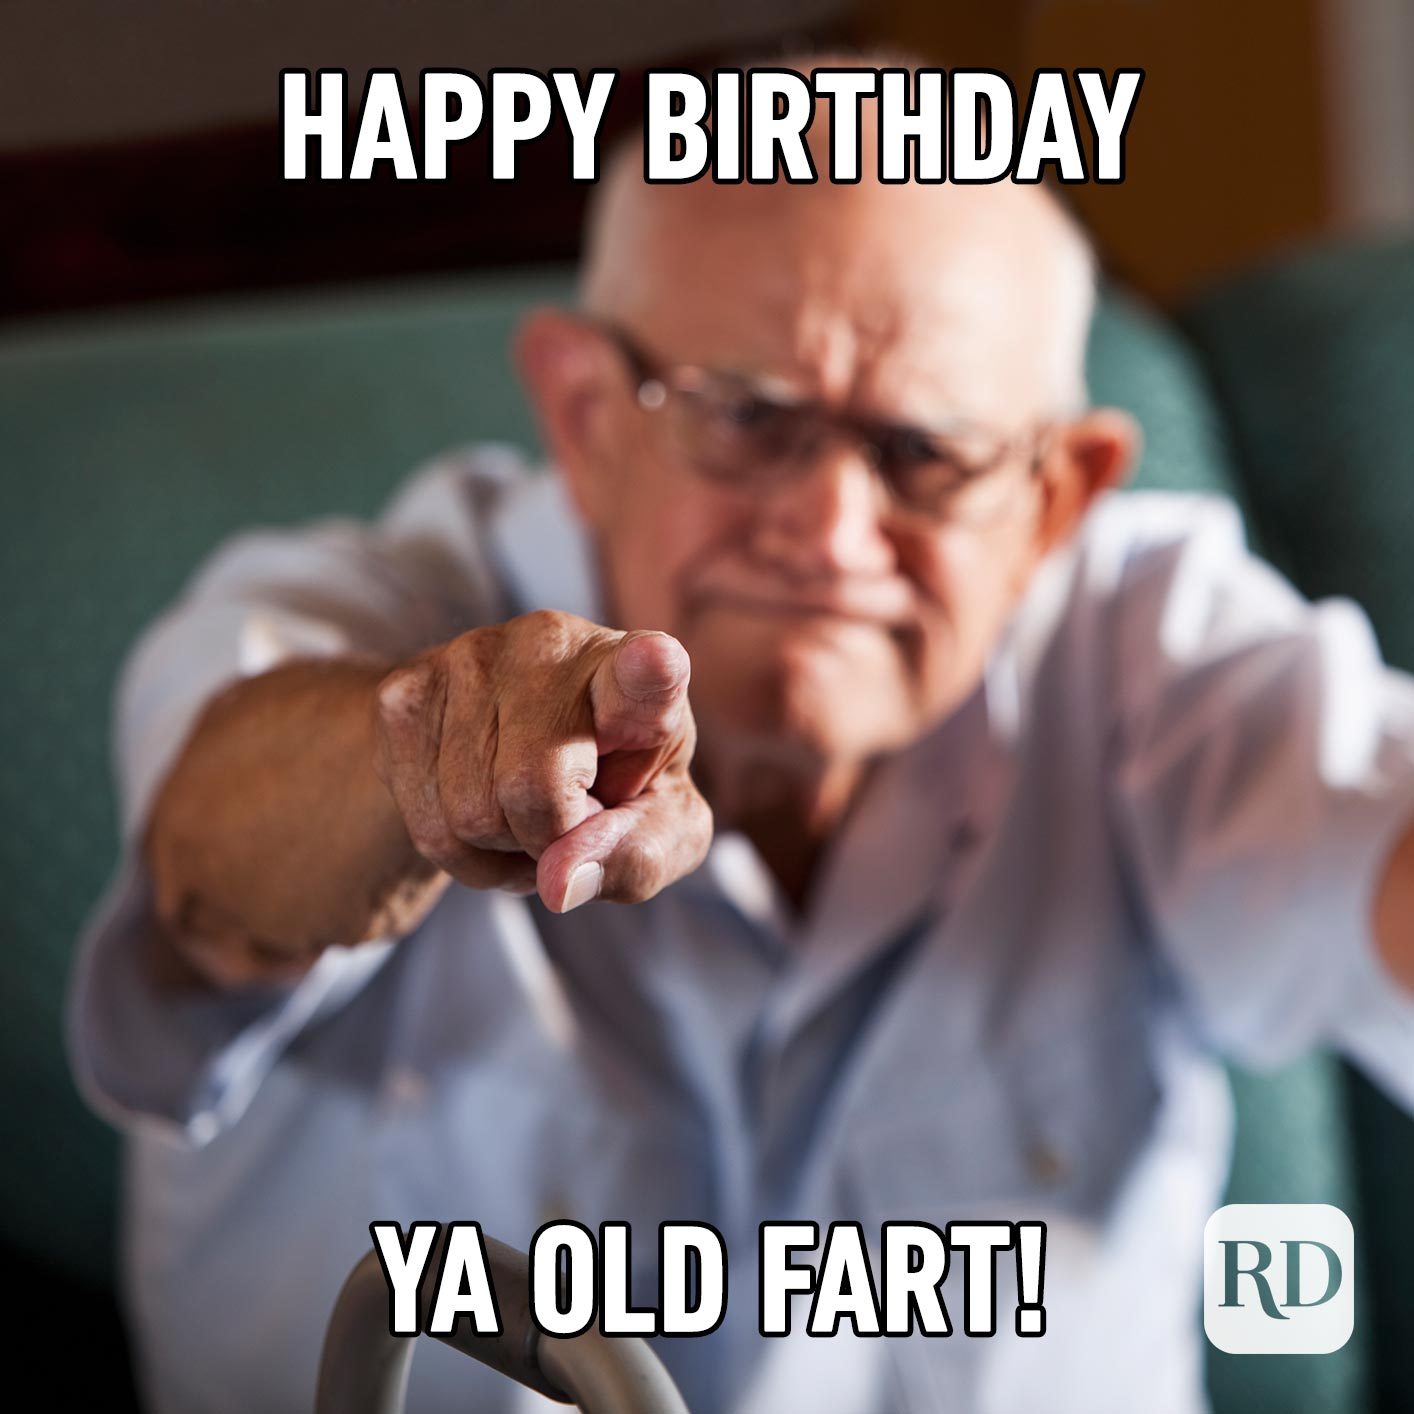 Happy Birthday ya old fart!